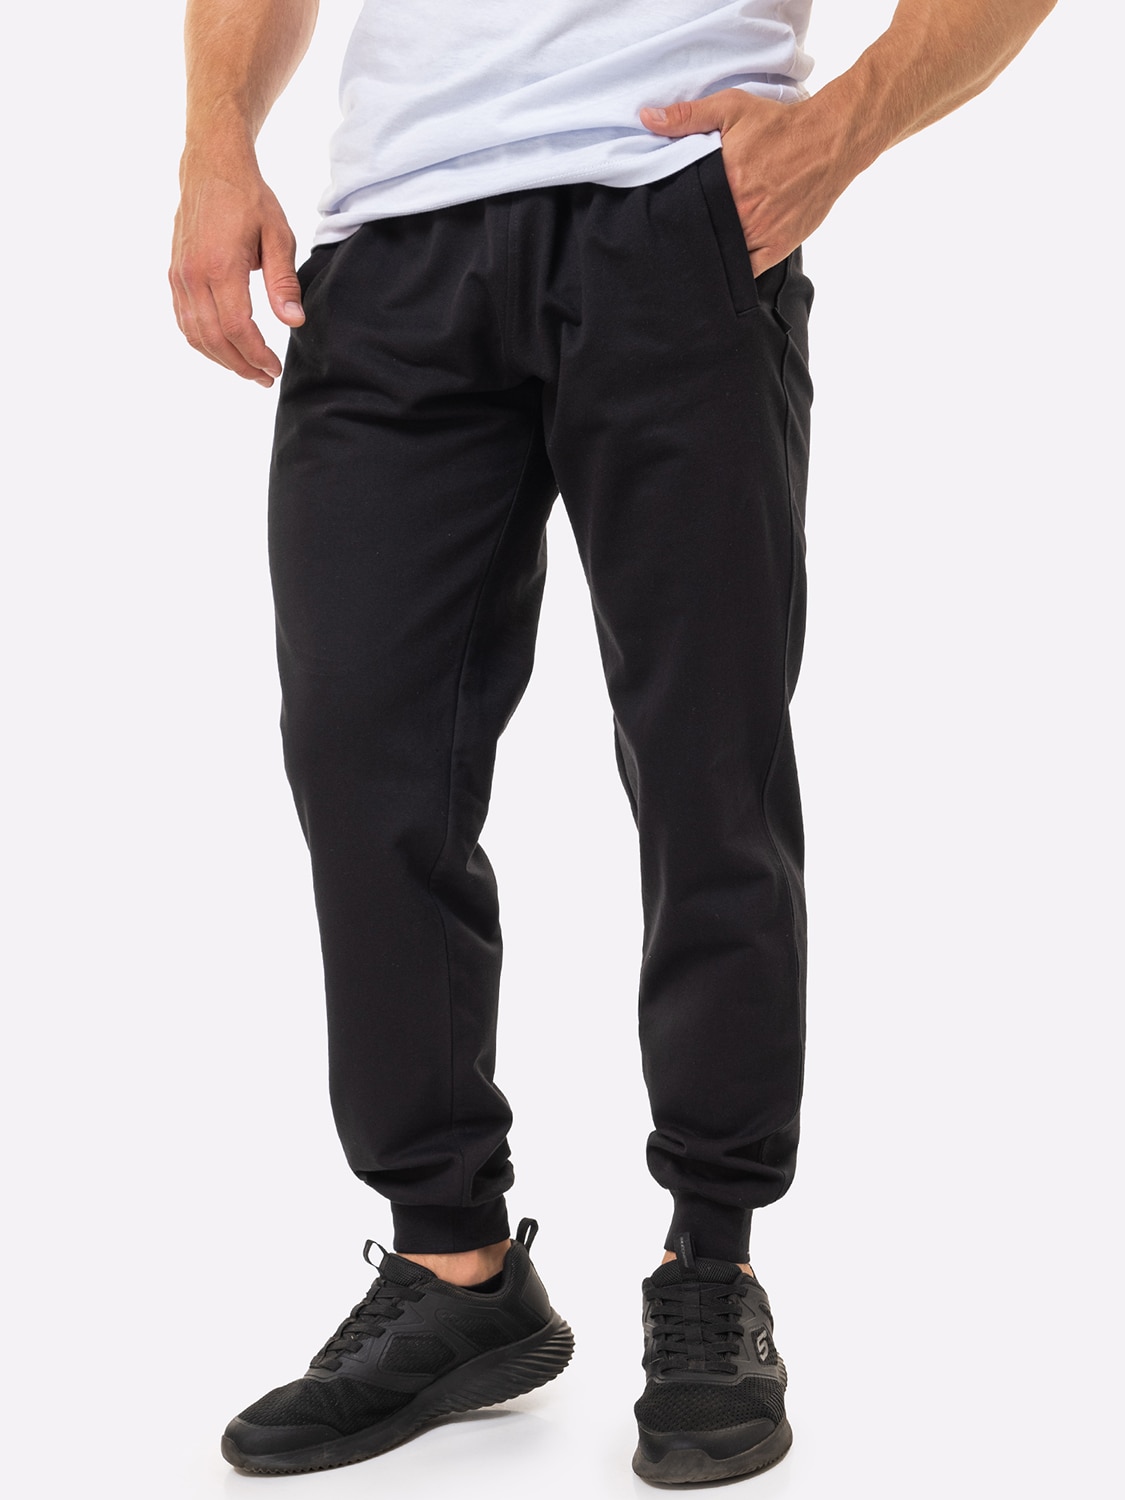 Спортивные брюки мужские HappyFox 9118 черные 48 RU